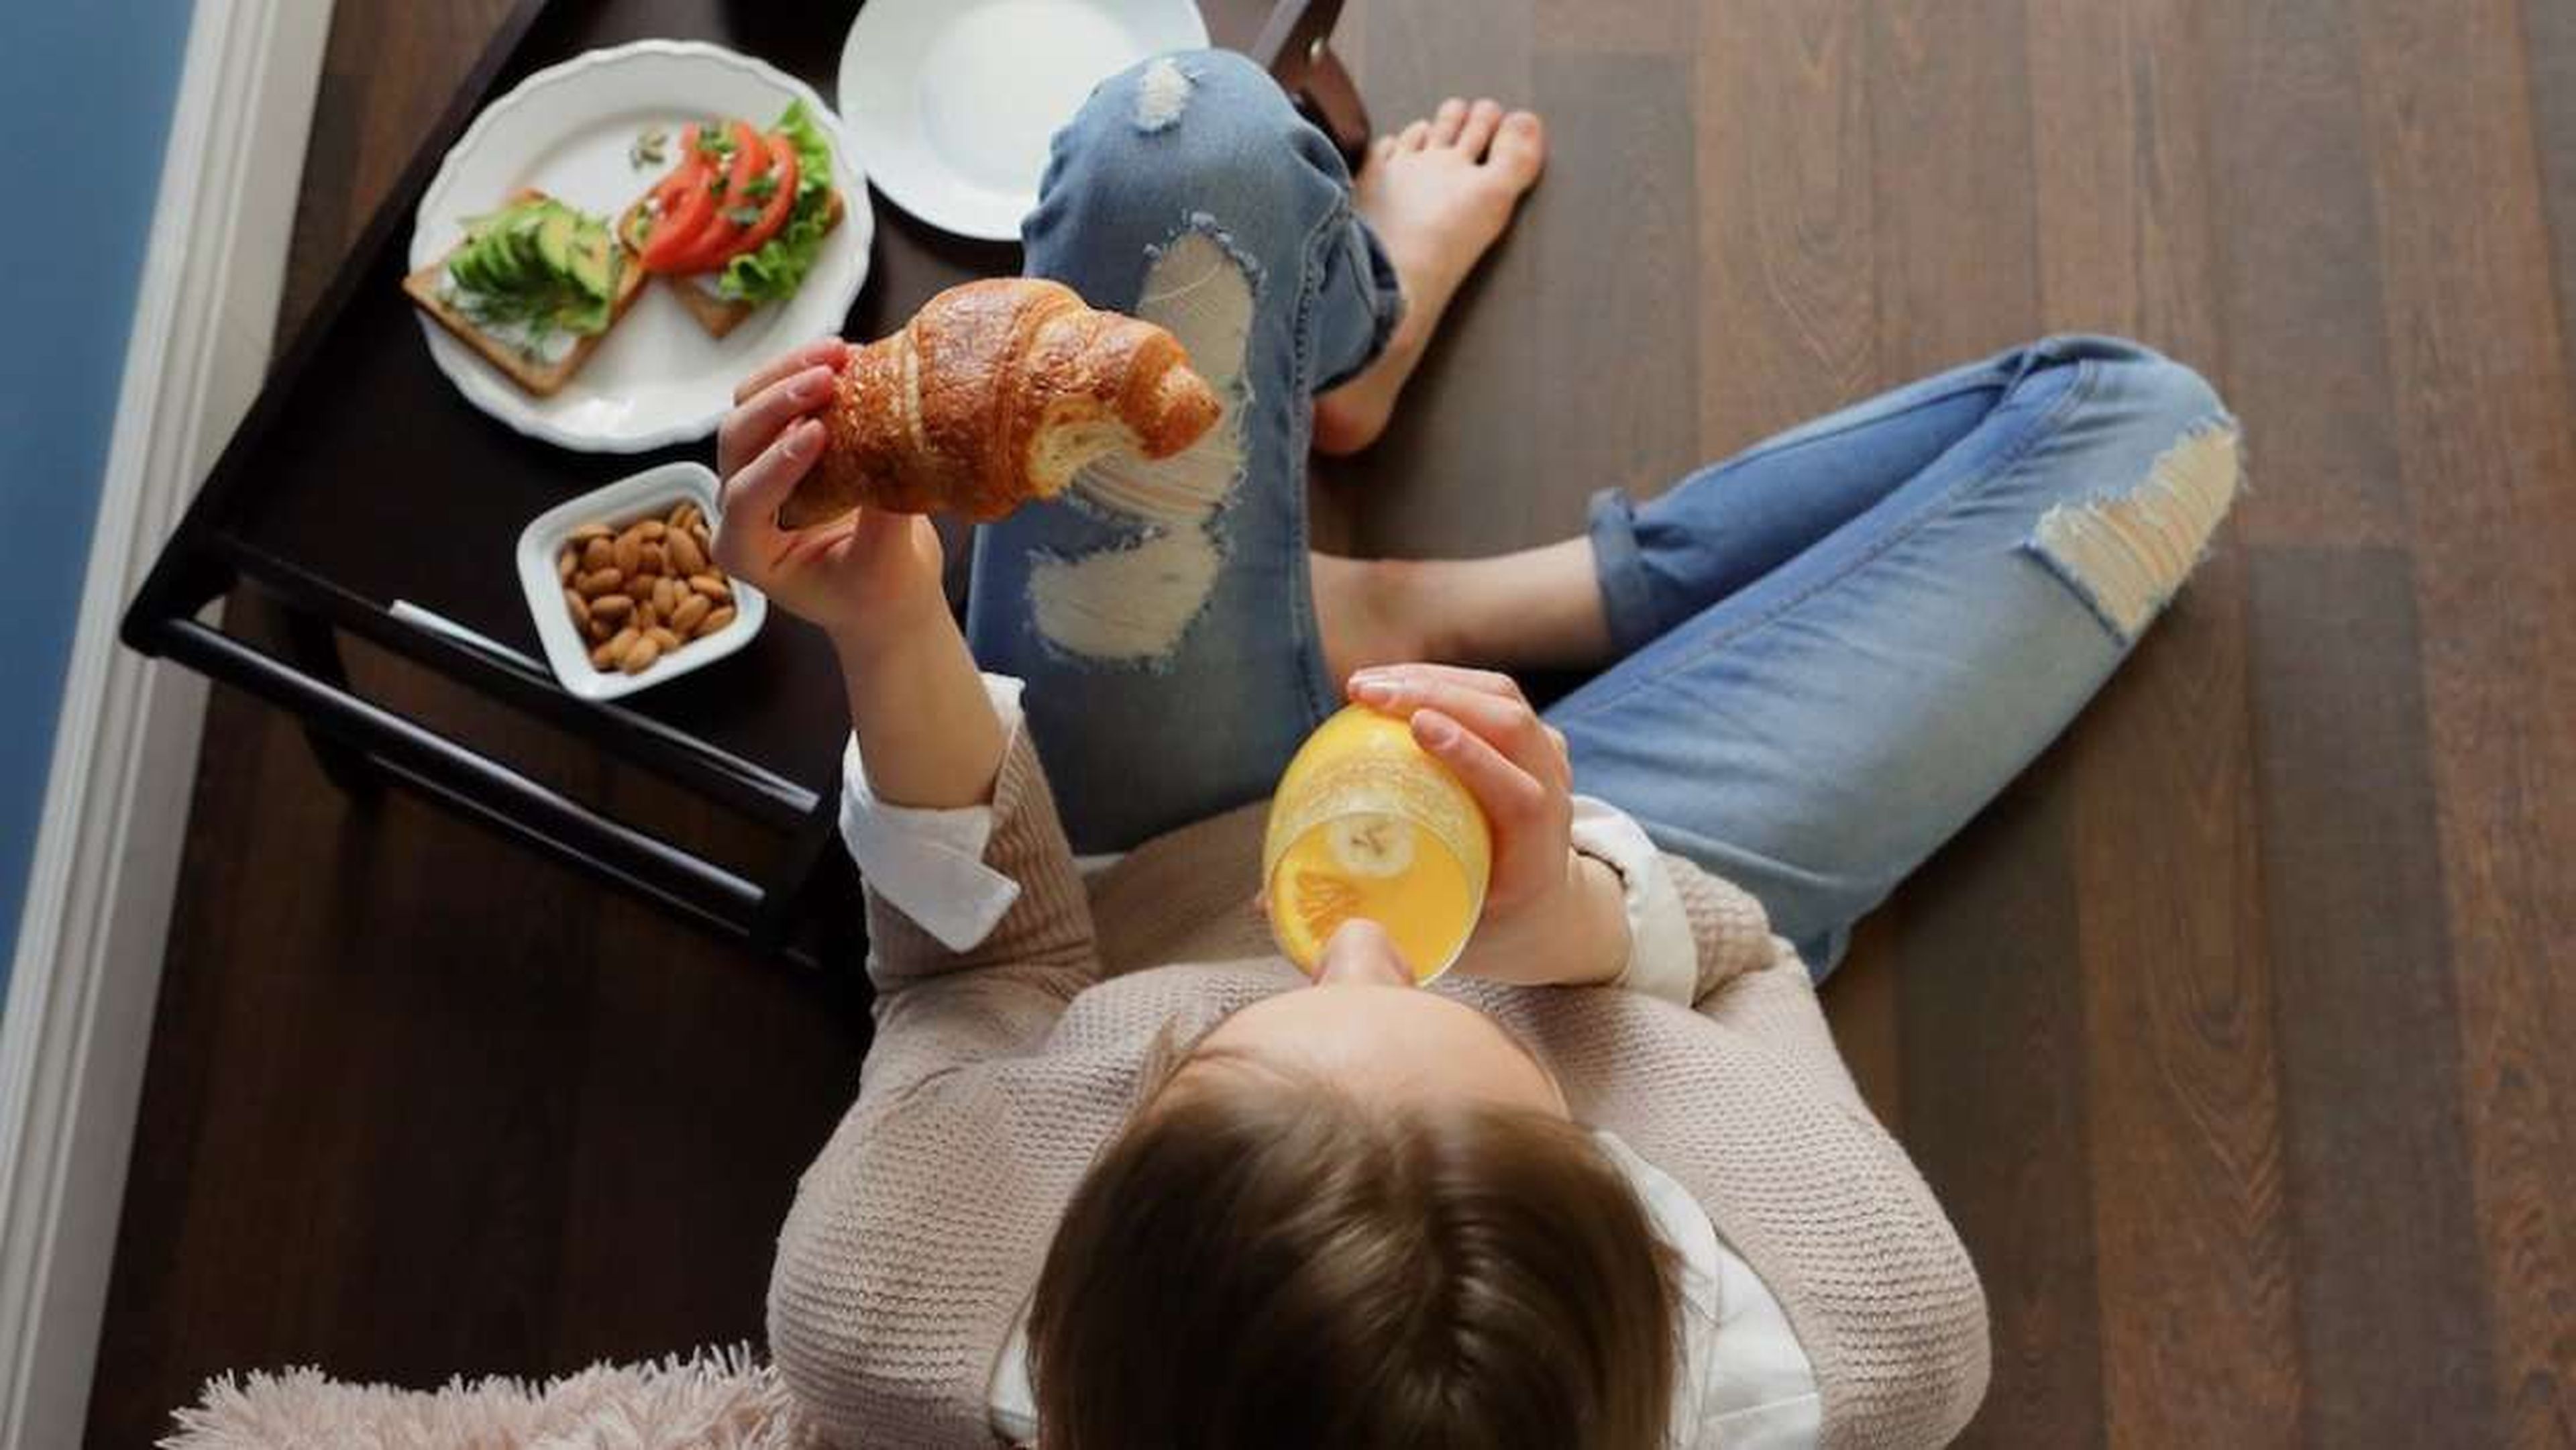 Una mujer desayunando croissant y zumo de naranja